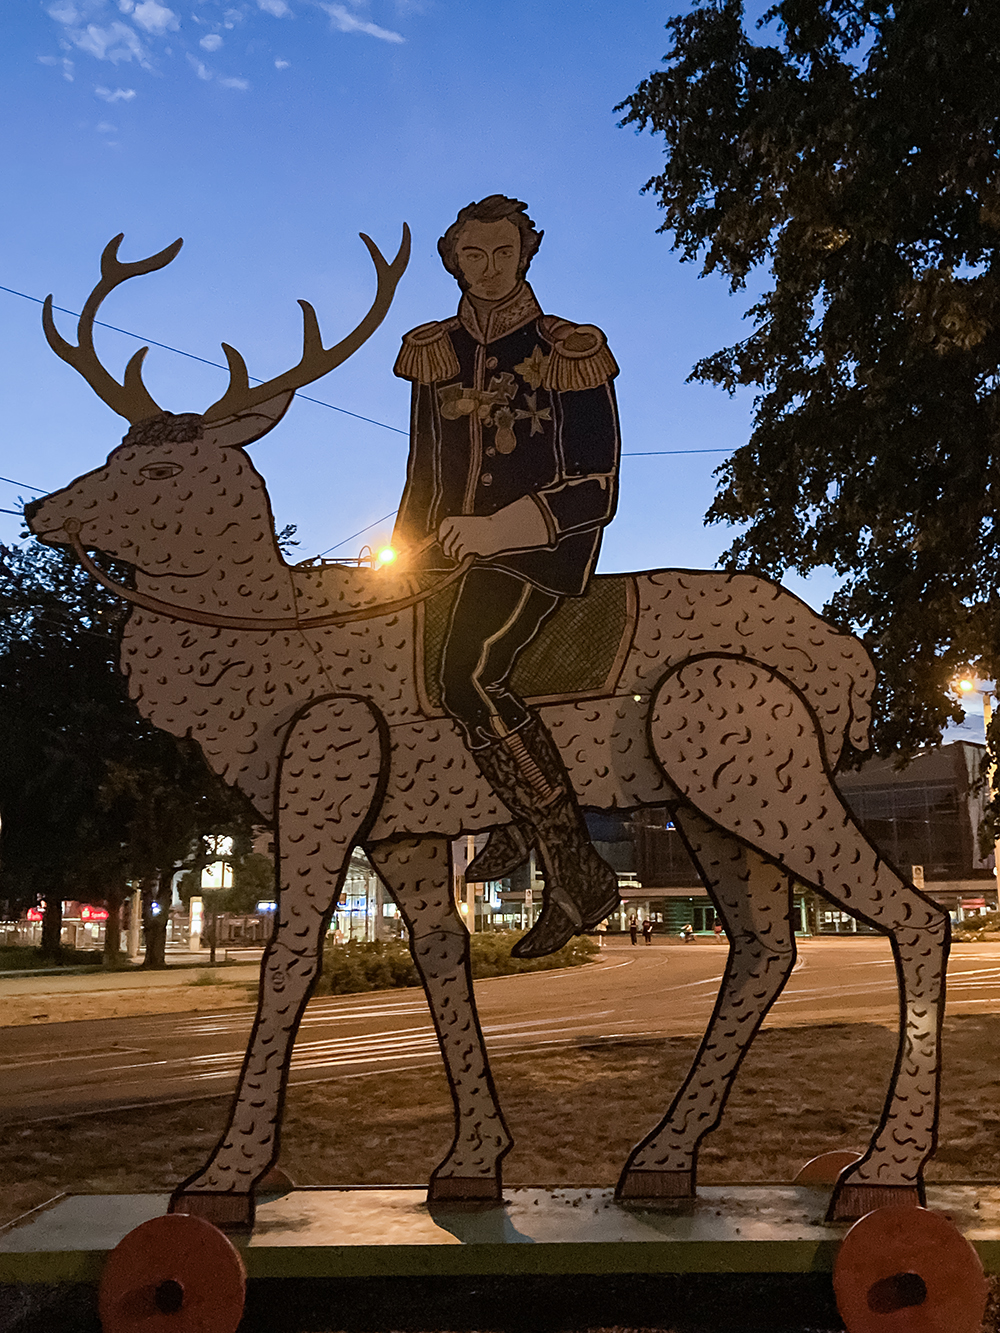 В Котбусе много необычных памятников. Это князь Пюклер на олене. Под Котбусом расположено его поместье, а еще в честь него назвали трехслойное мороженое